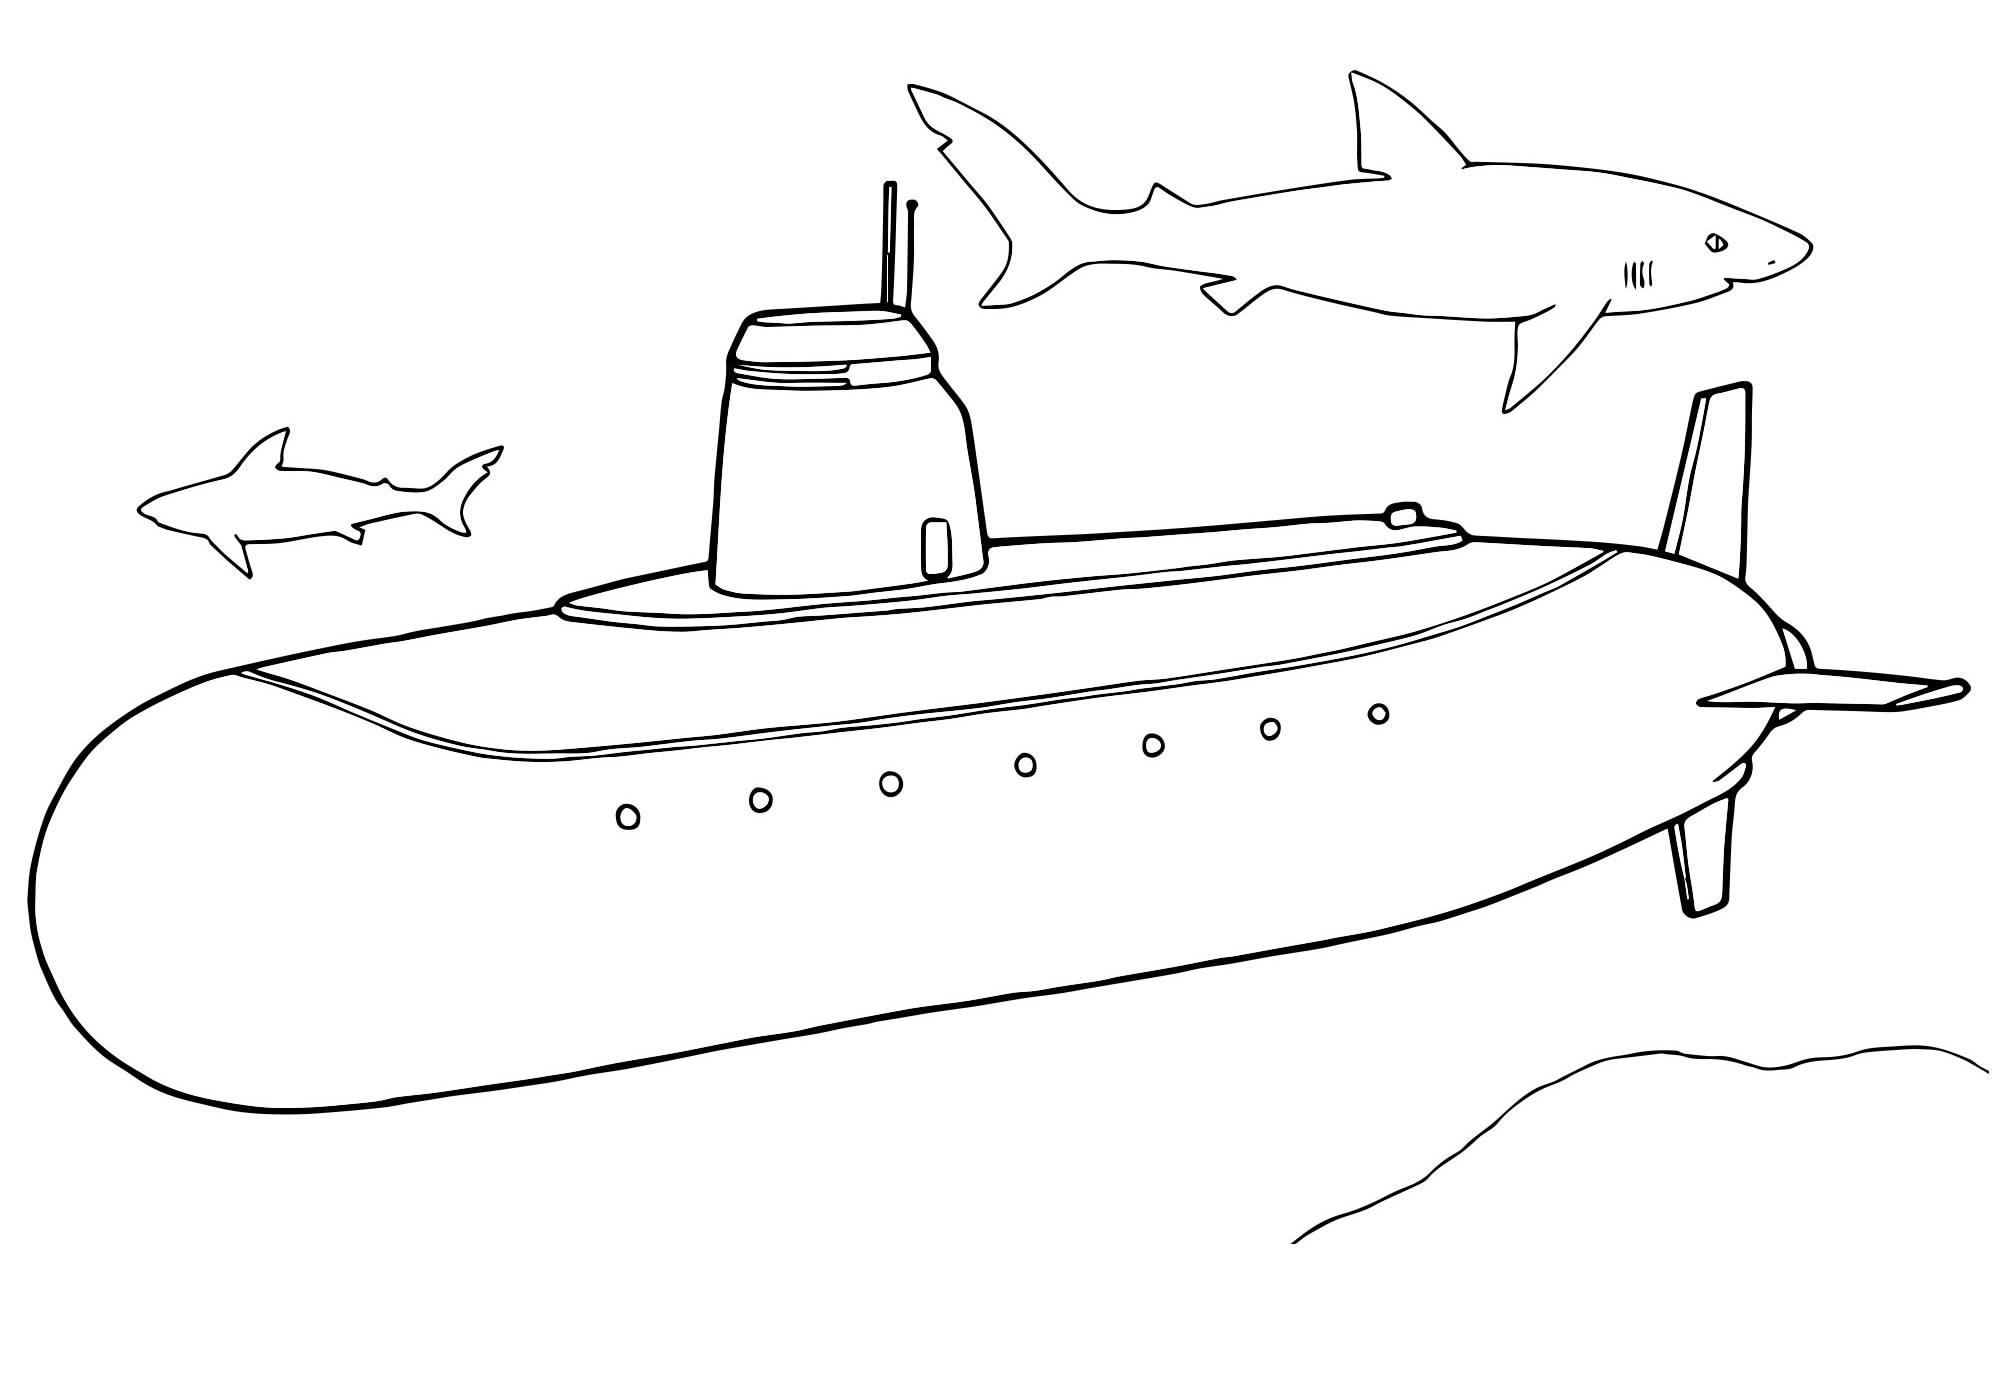 Подводная лодка. Раскраска для детей